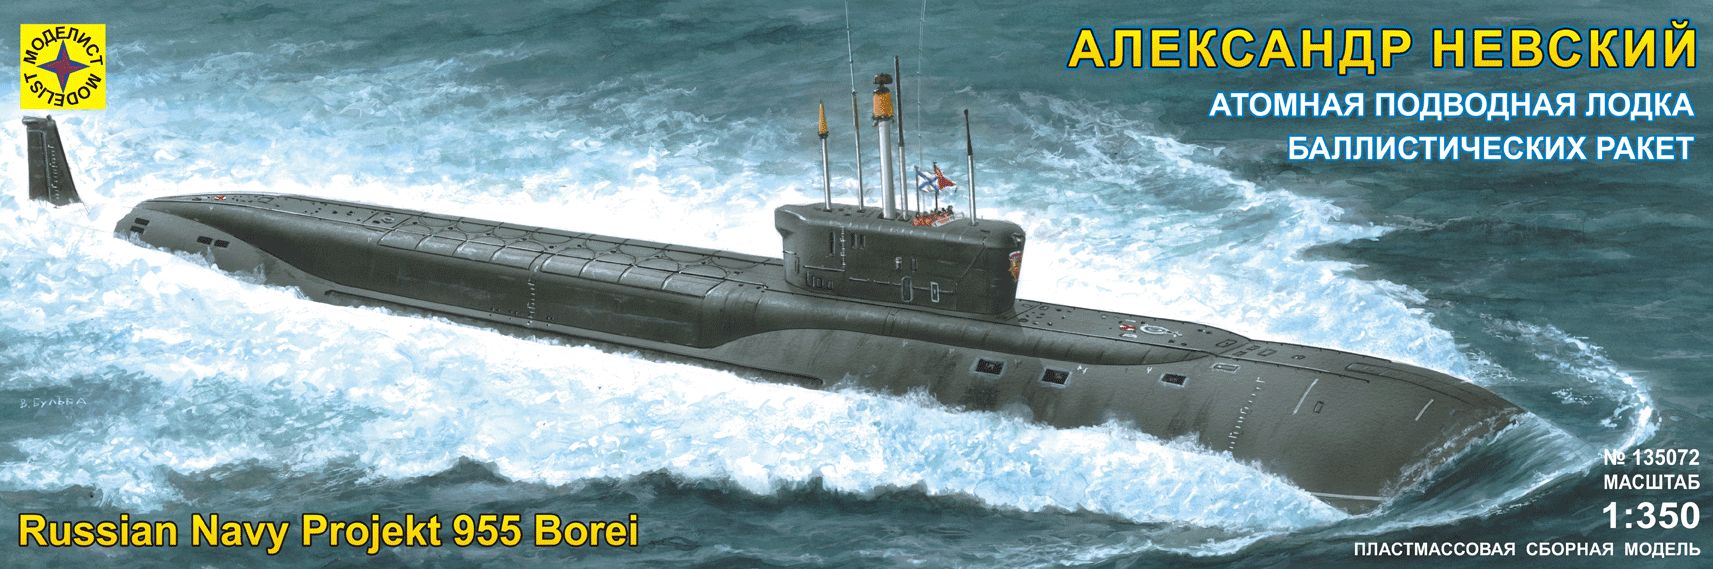 135072  флот  Атомная подводная лодка баллистических ракет "Александр Невский" (1:350)